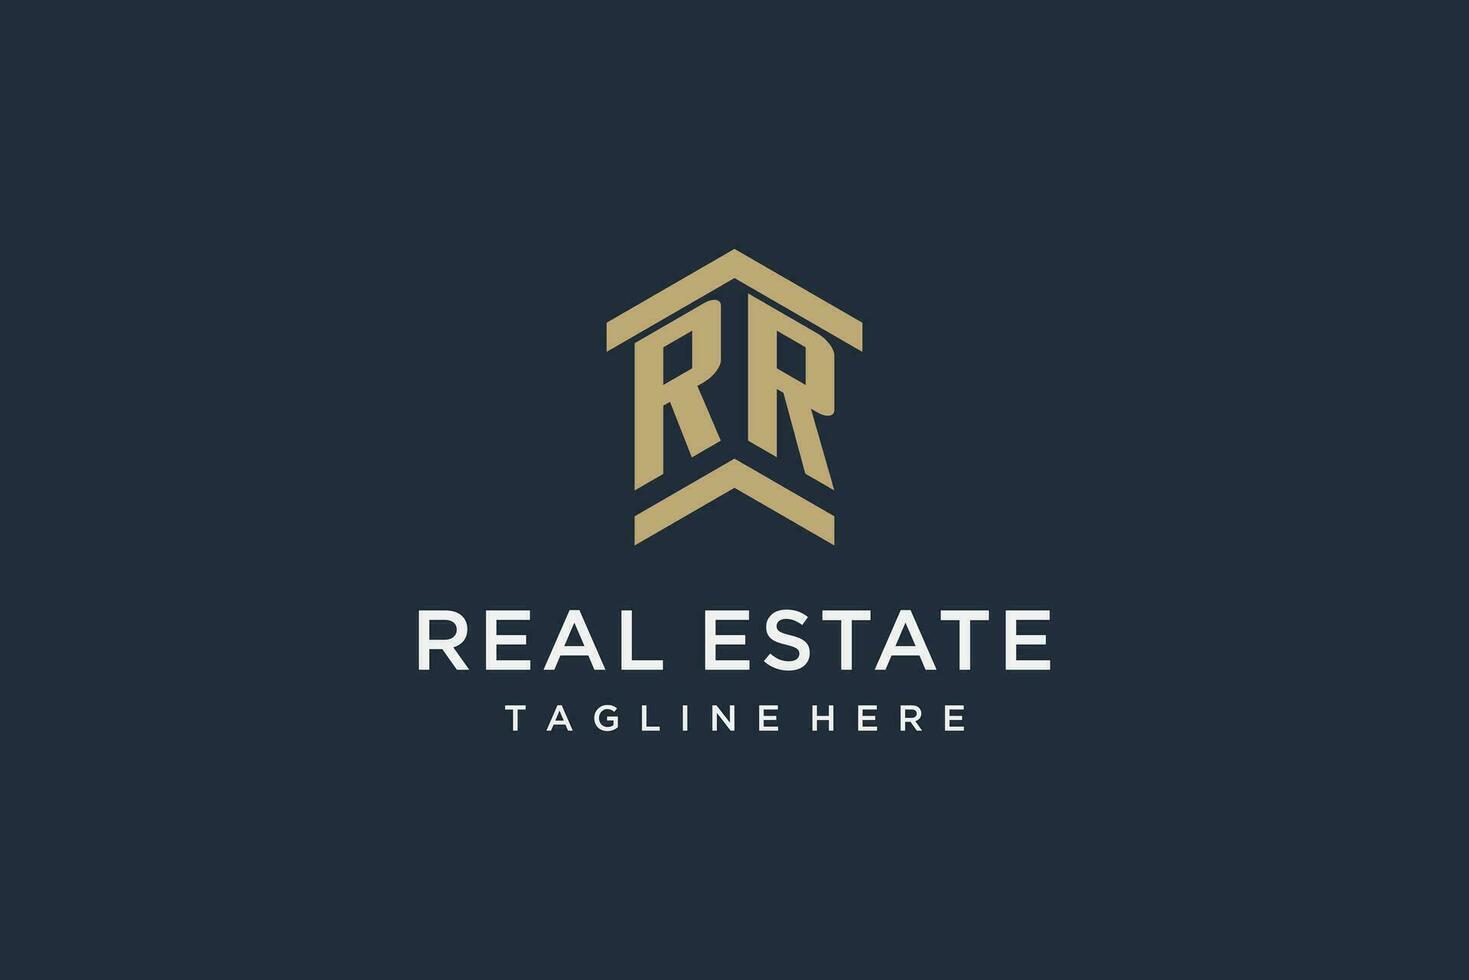 första rr logotyp för verklig egendom med enkel och kreativ hus tak ikon logotyp design idéer vektor